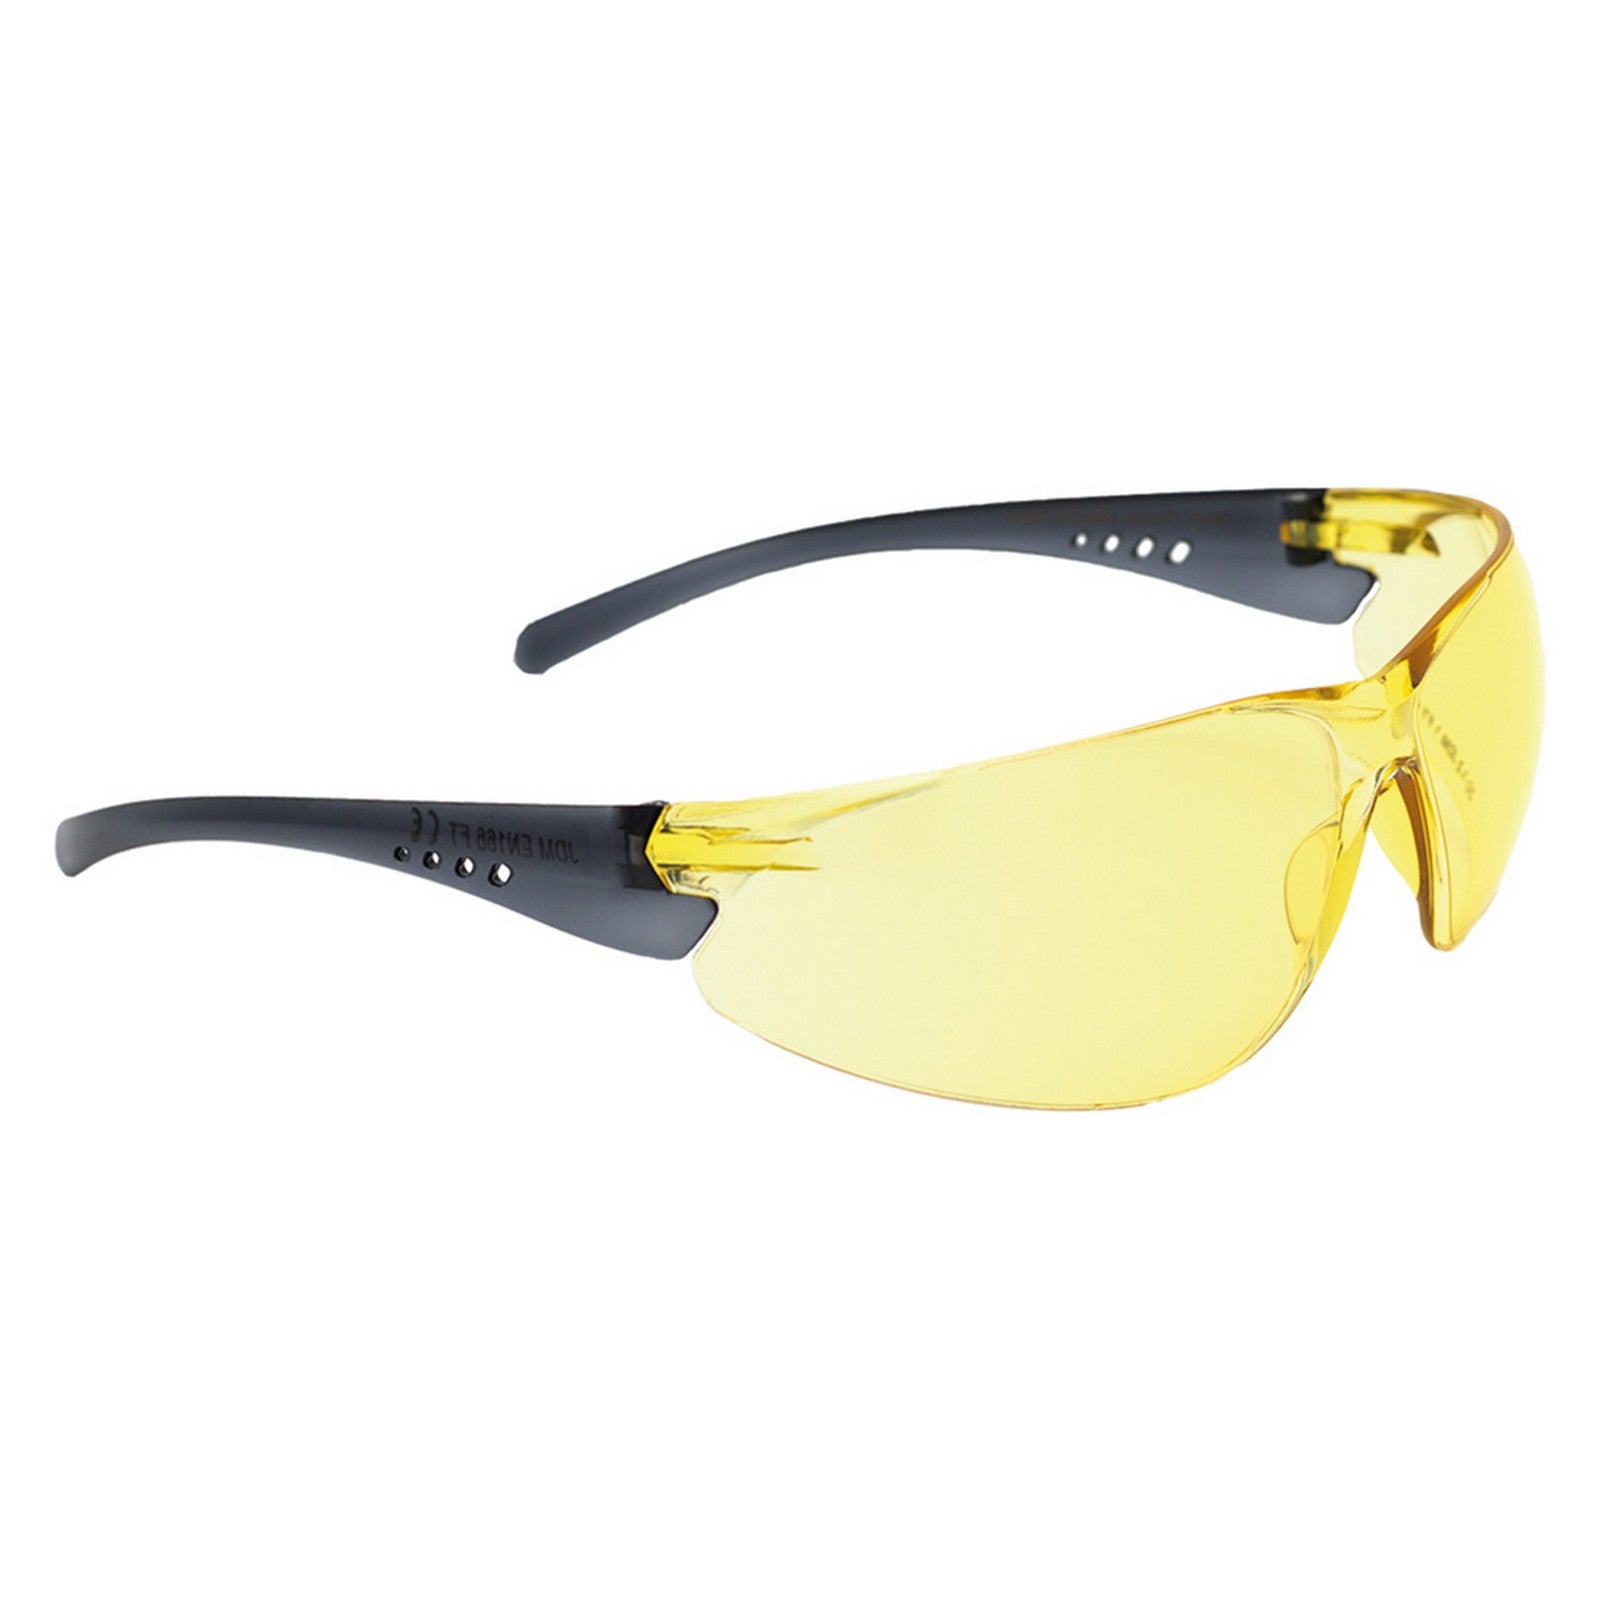 occhiali da lavoro 'flash high visibility' art.flyhw - lente gialla cod:ferx.1065344nlm